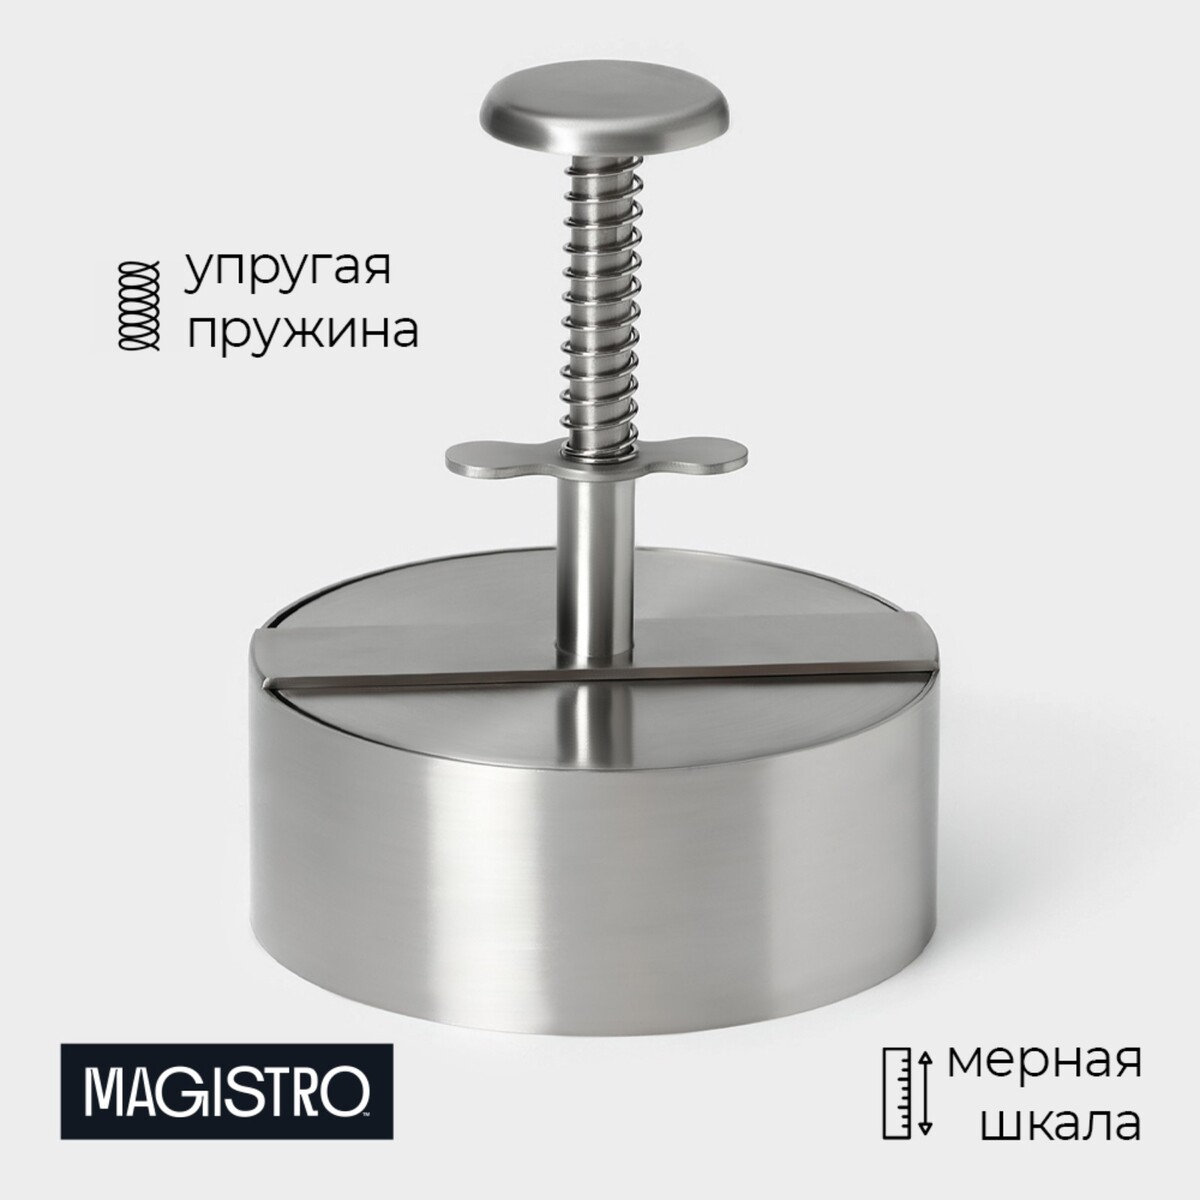 Пресс для бургеров magistro steel, 14×11.5 см, 304 сталь смеситель для кухни gota rocio steel с картриджем для одного типа воды нержавеющая сталь 100311 gota